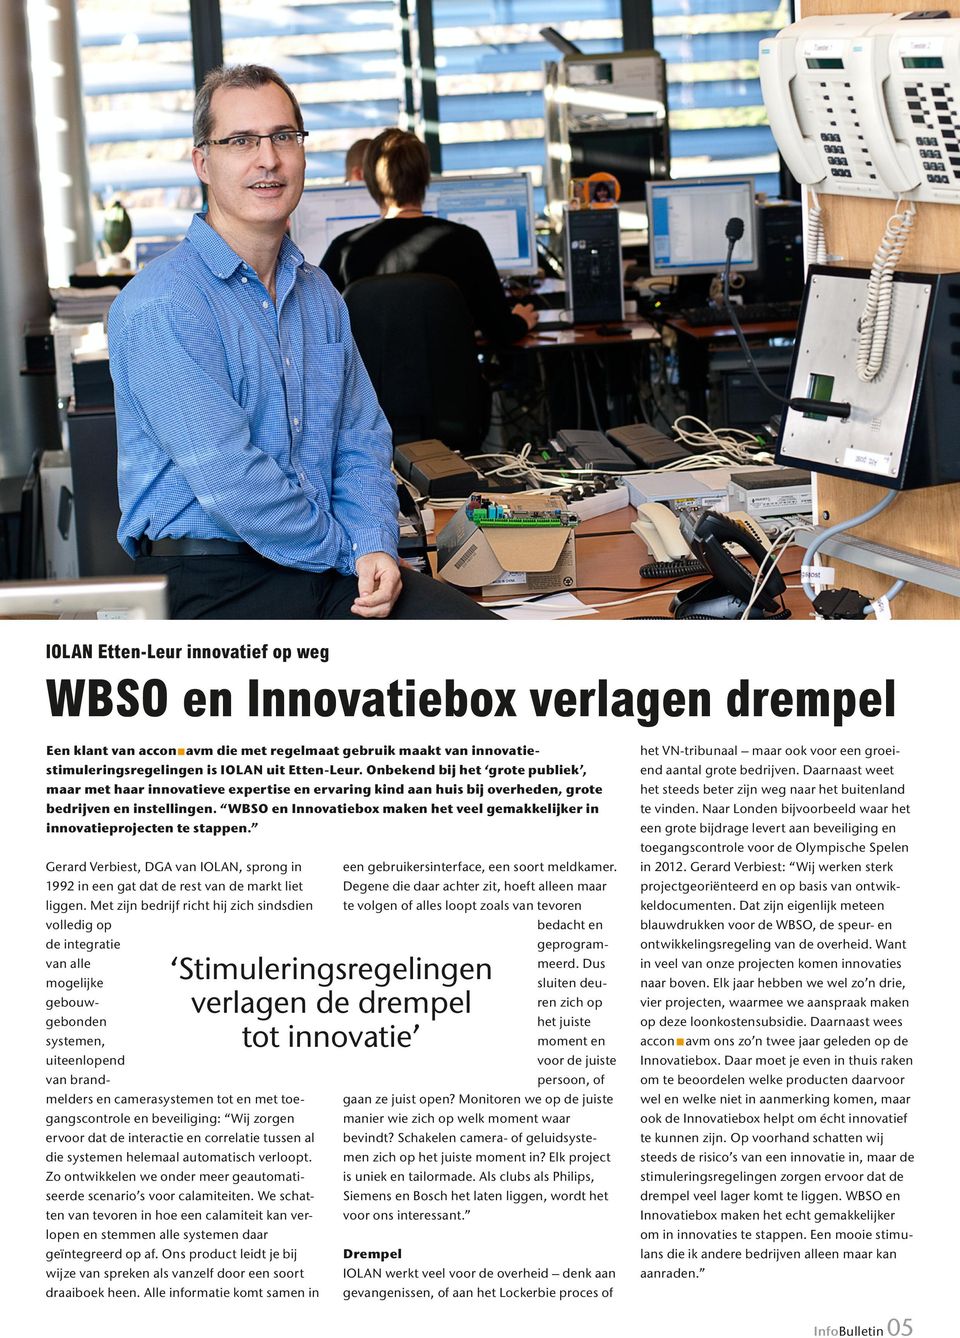 WBSO en Innovatiebox maken het veel gemakkelijker in innovatieprojecten te stappen. Gerard Verbiest, DGA van IOLAN, sprong in 1992 in een gat dat de rest van de markt liet liggen.